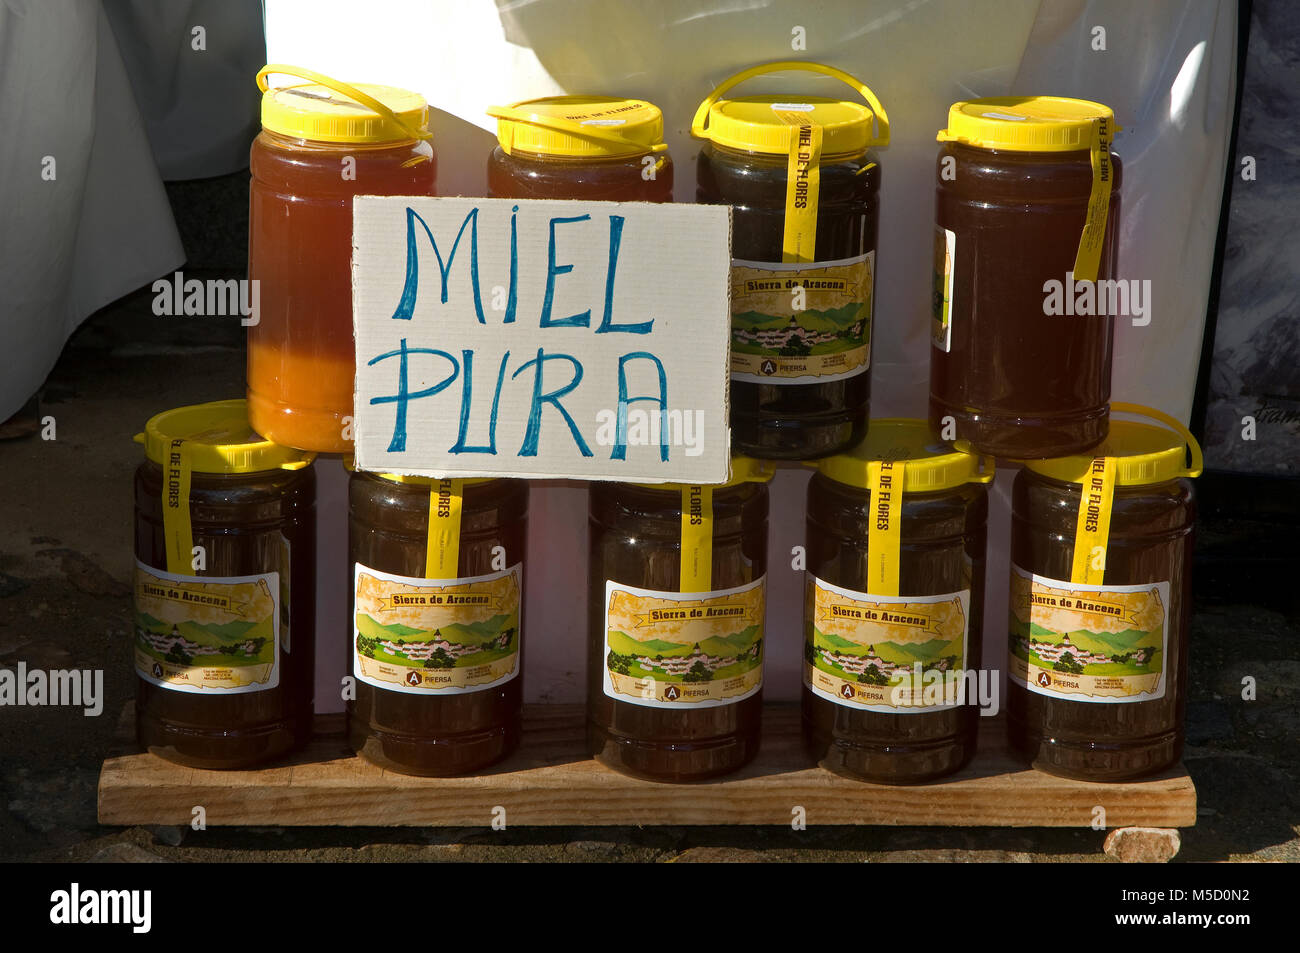 Vente de pots de miel, la Sierra de Aracena, Alajar, province de Huelva, Andalousie, Espagne, Europe Banque D'Images